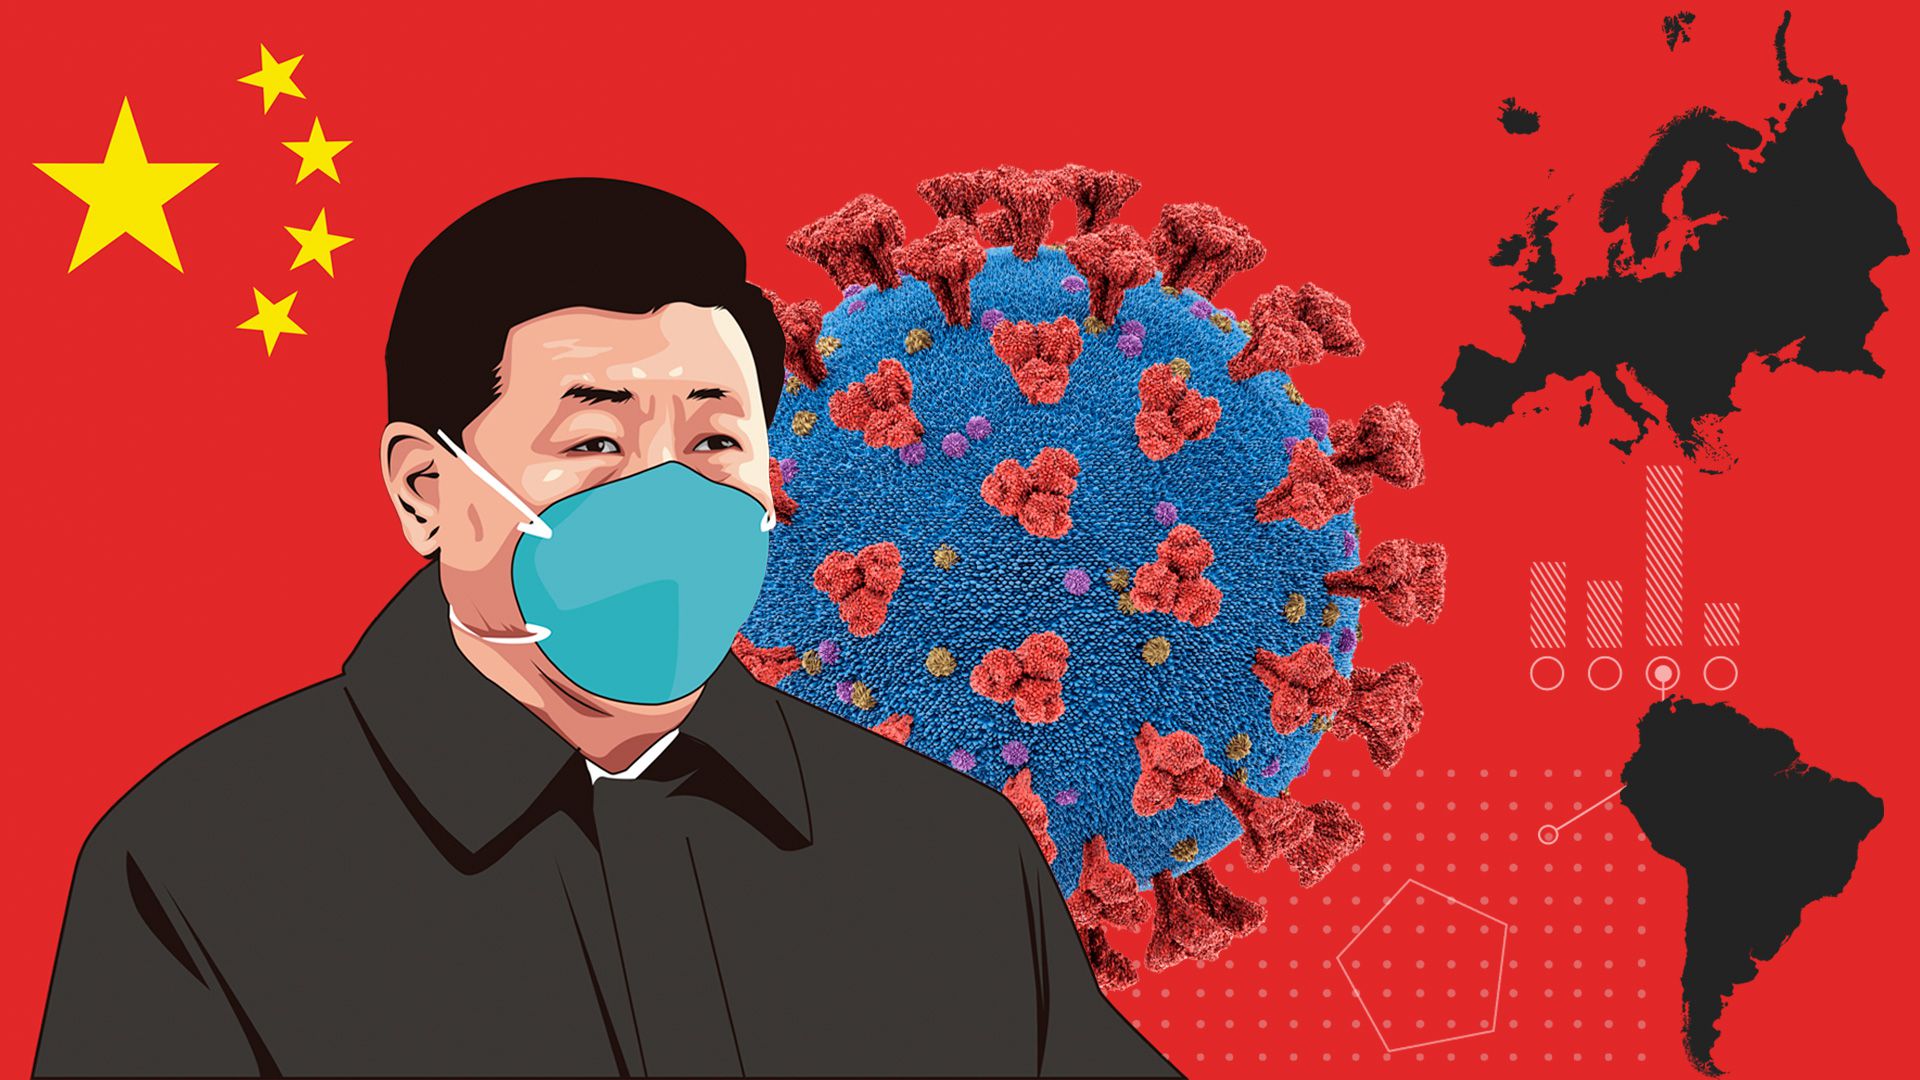 La estrategia de Xi Jinping no se detiene pese a la pandemia del coronavirus. Por el contrario, acelera sus planes de expansión y neocolonización (Infobae)